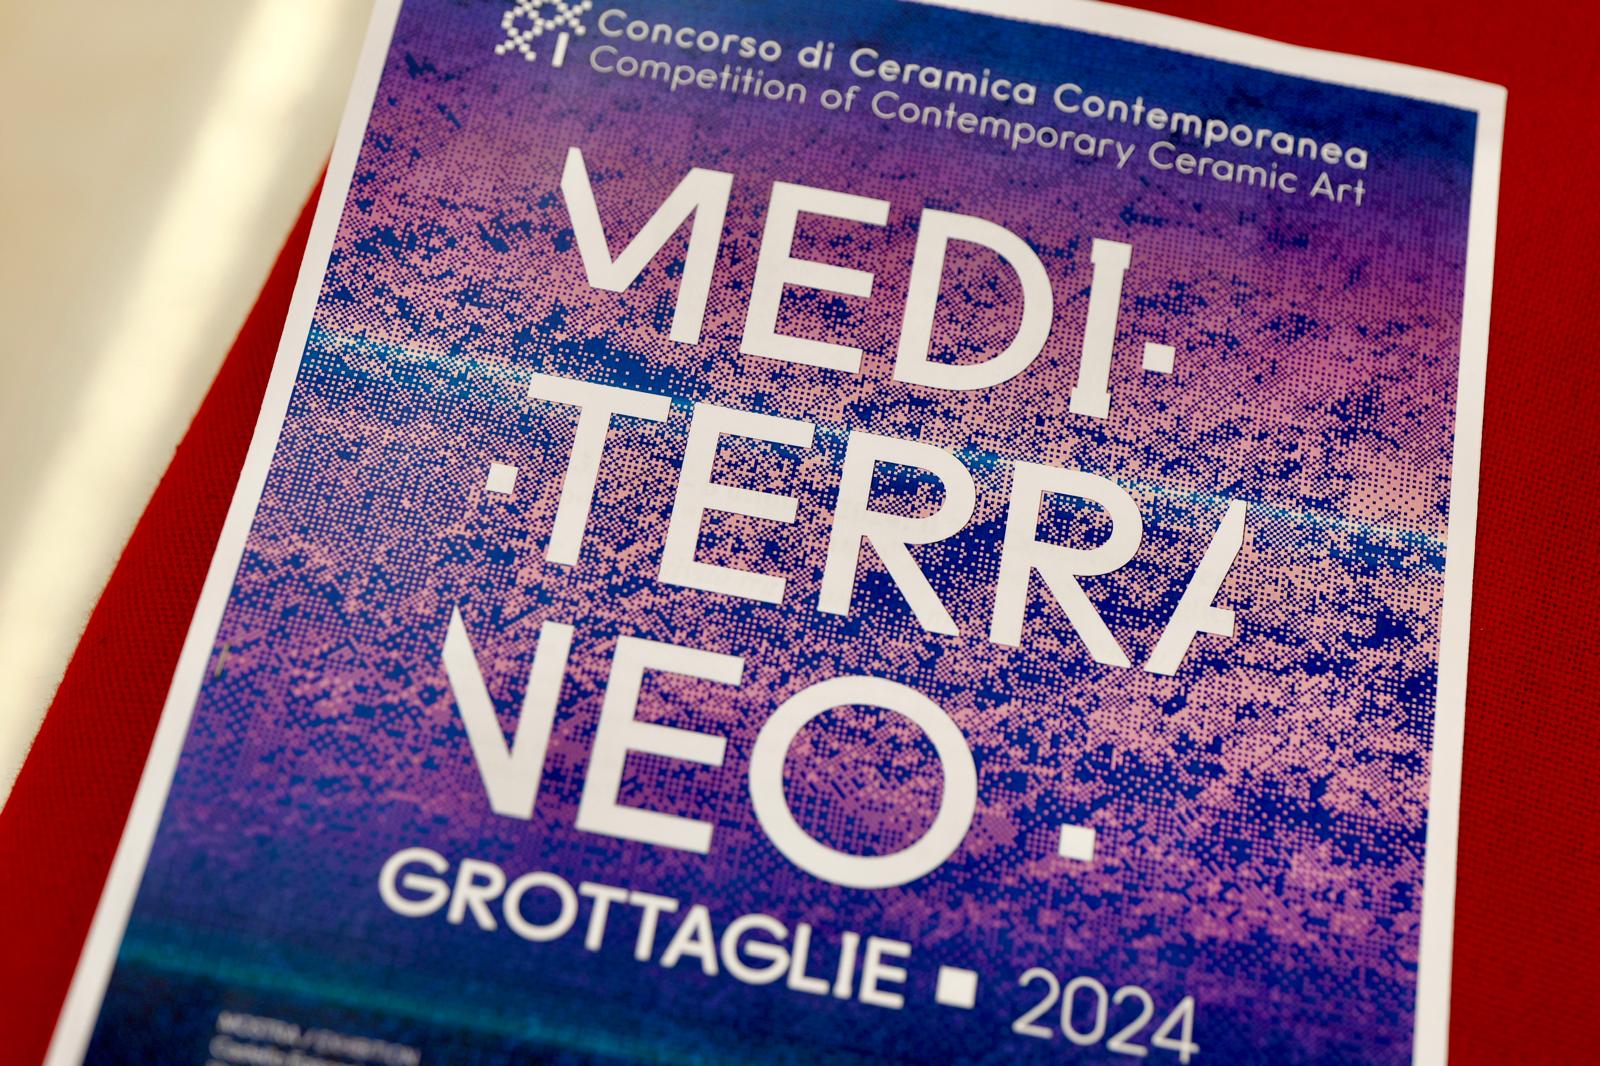 Galleria Grottaglie, 13 luglio - 6 ottobre 2024: il 31° Concorso di Ceramica Contemporanea “Mediterraneo” accende l'estate pugliese - Diapositiva 3 di 7